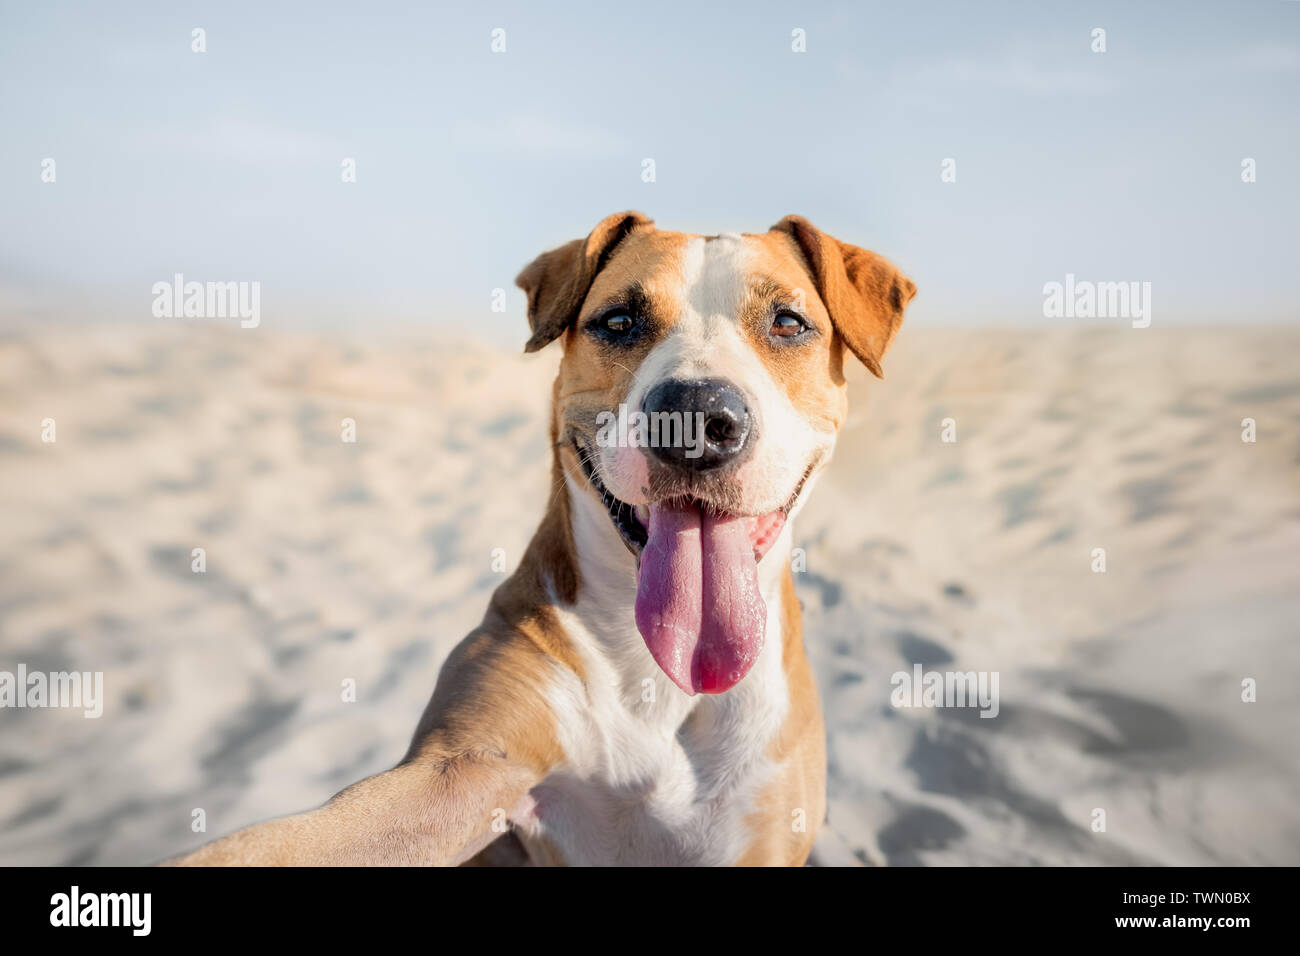 Sorridenti cane tenendo autoritratto sulla spiaggia. Ritratto di un simpatico staffordshire terrier imitando un selfie shot con il mare in estate Foto Stock